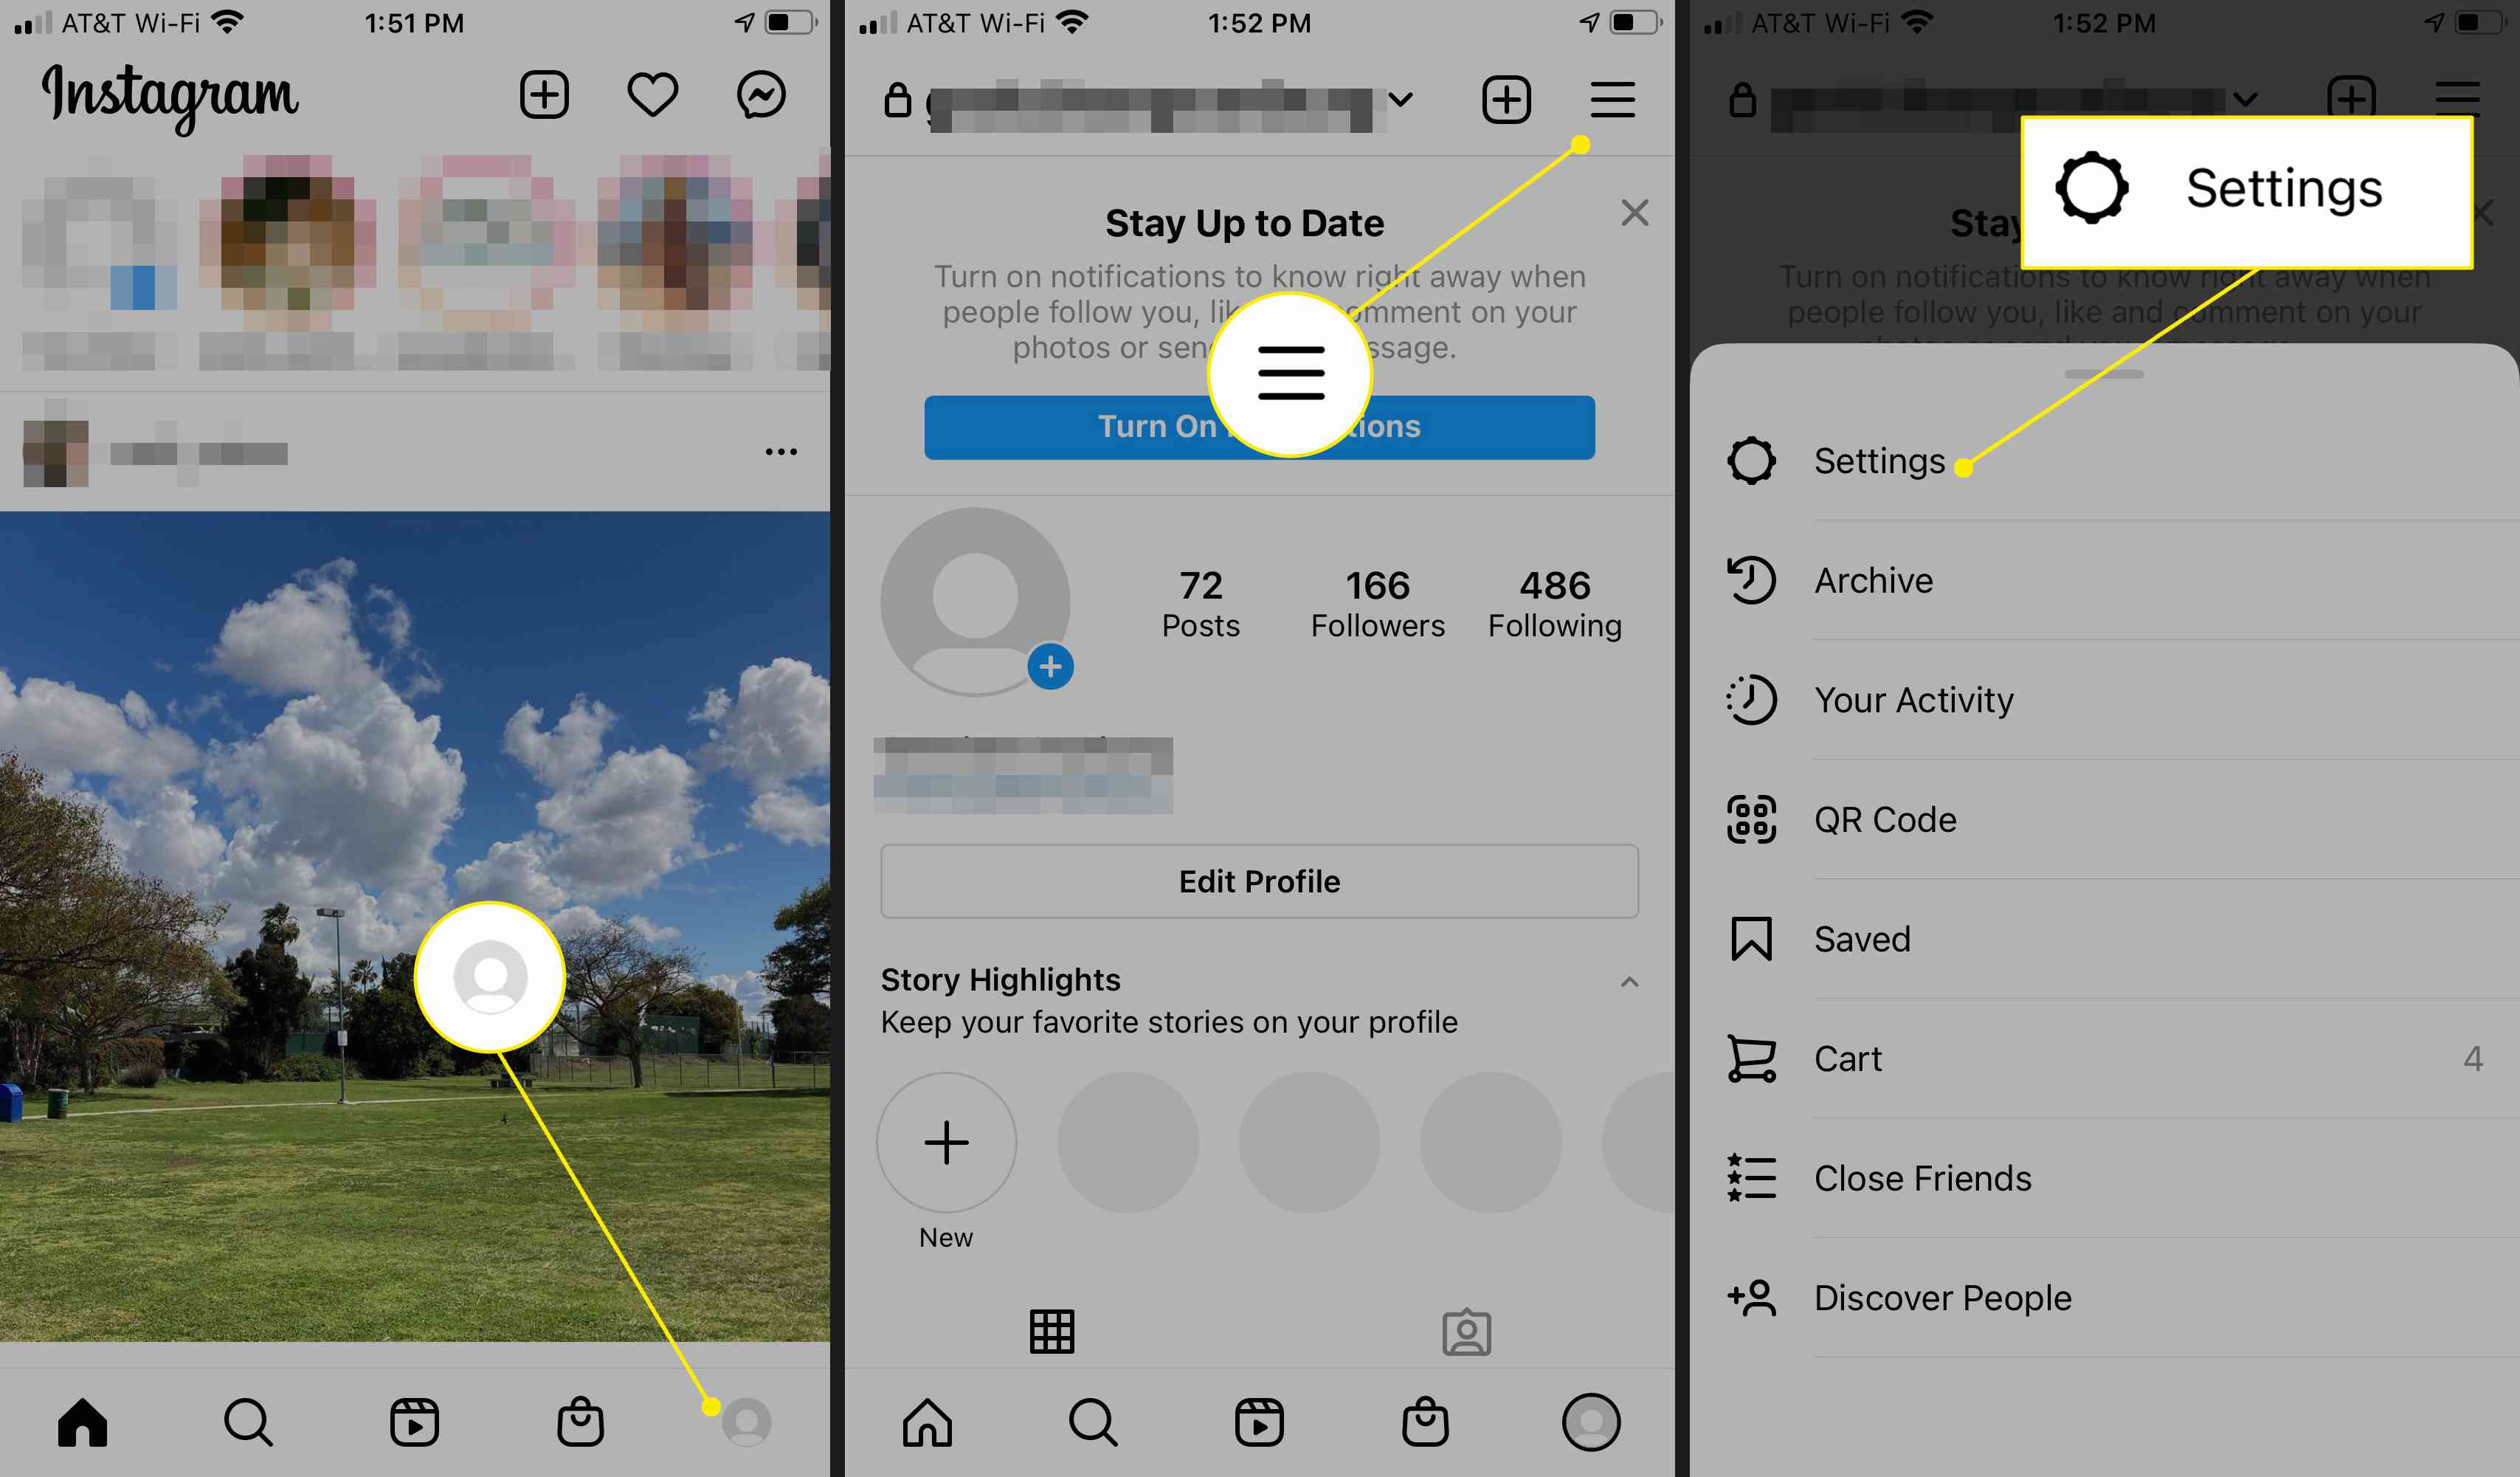 Instagram-appens profilikon, meny och inställningar markerade